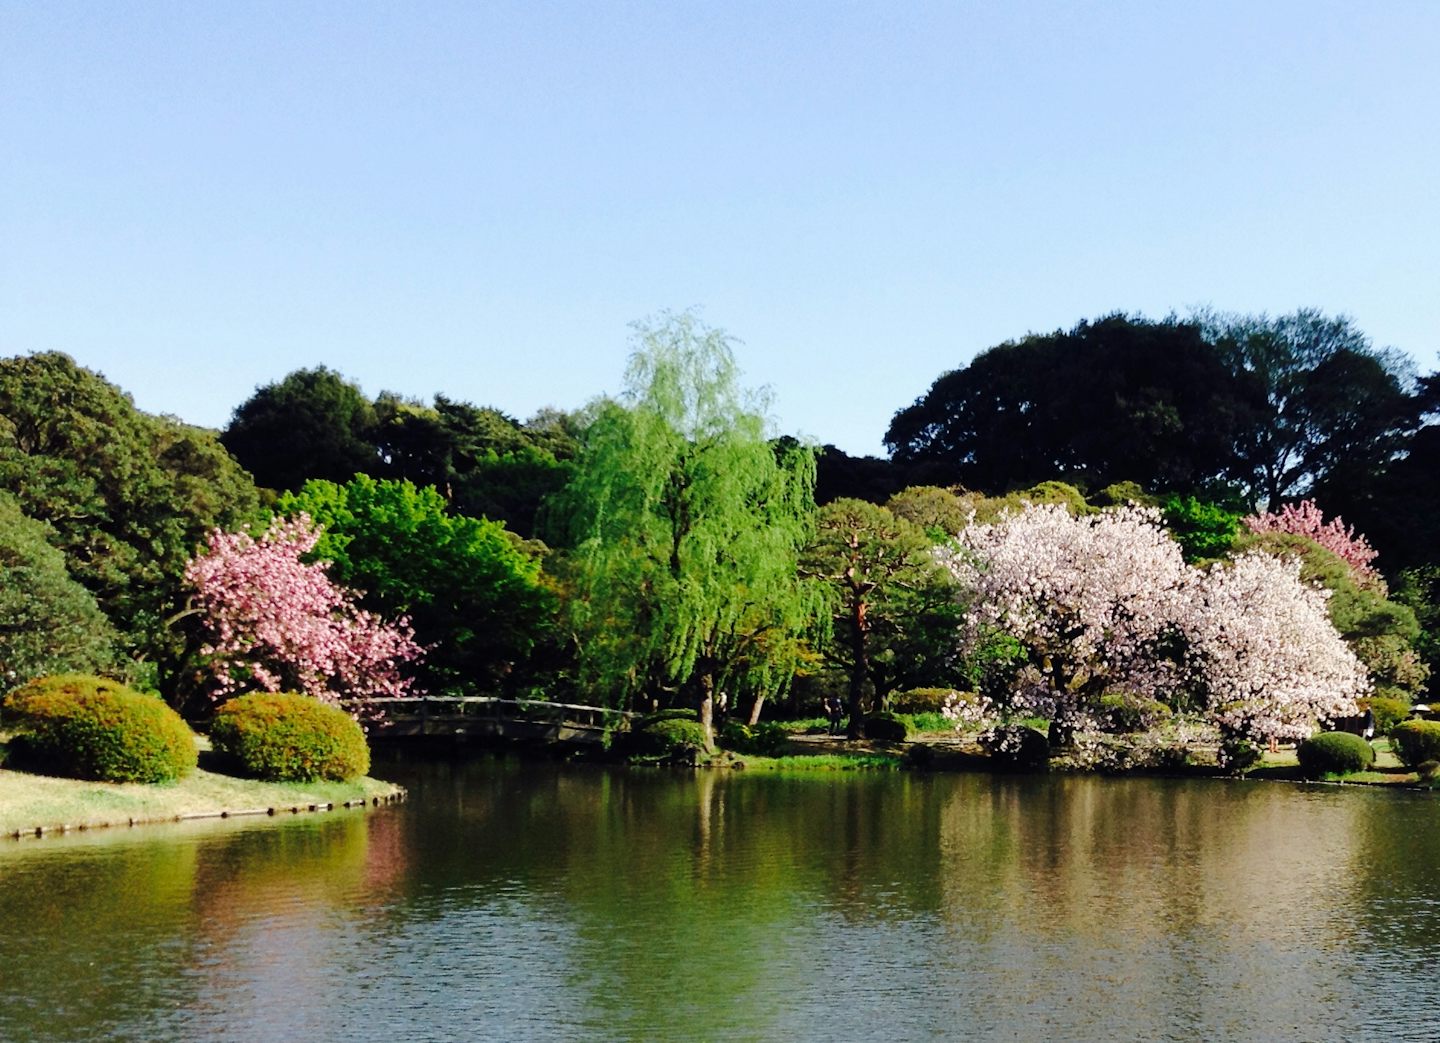 Shinjuku national garden Tokyo, a lovely park in spring.